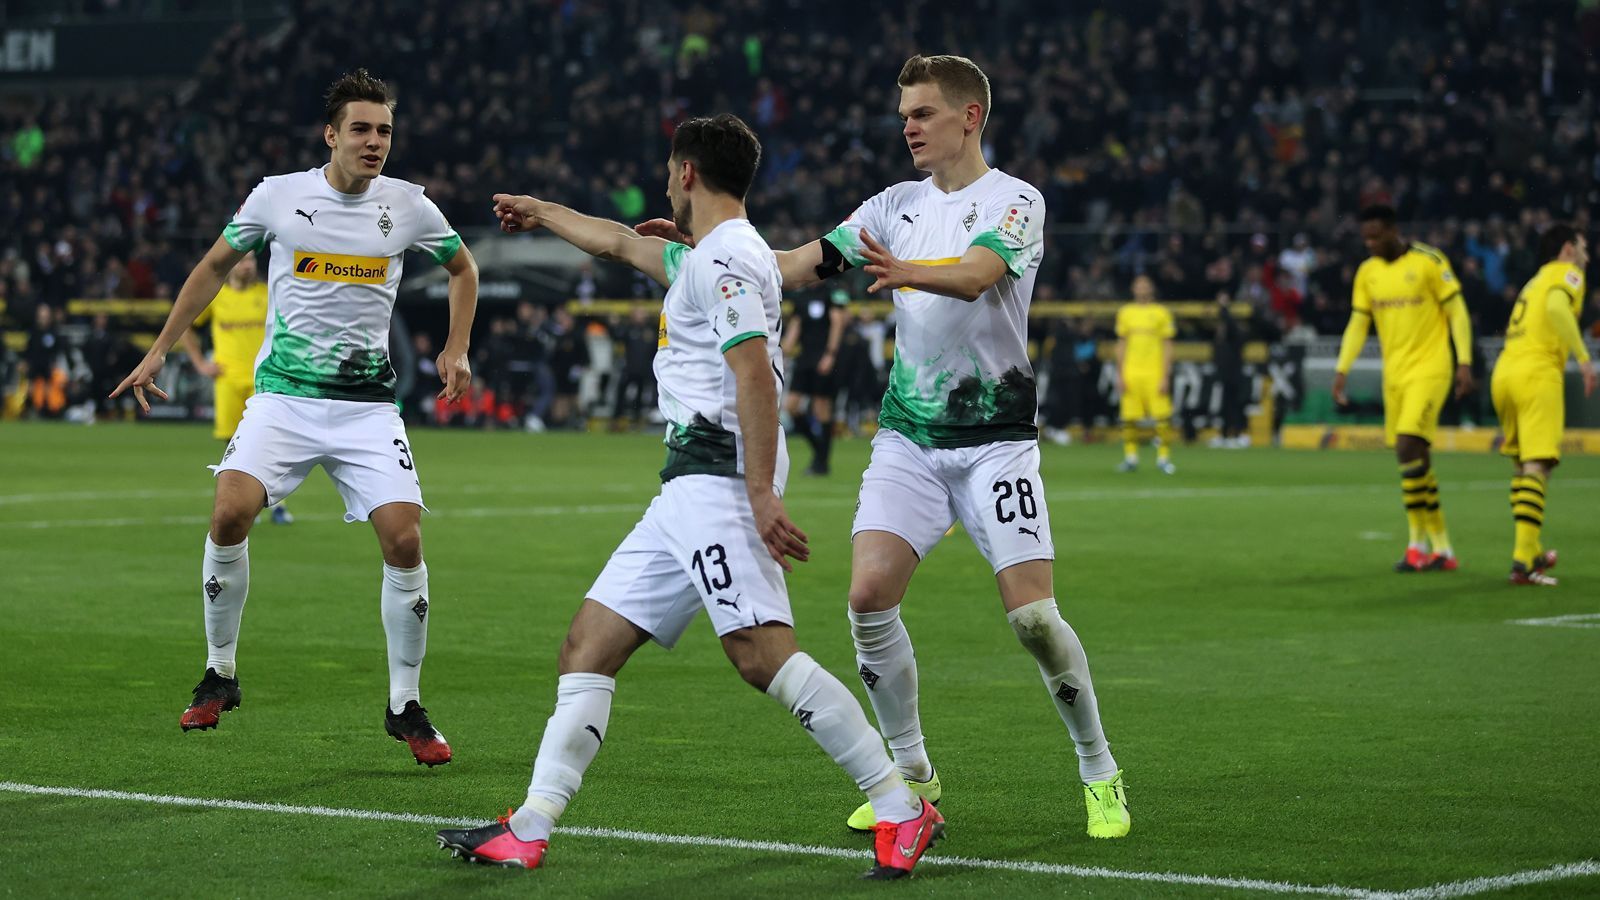 
                <strong>Platz 8: Borussia Mönchengladbach</strong><br>
                Rückrunden-Gegner sammelten: 280 Punkte
              